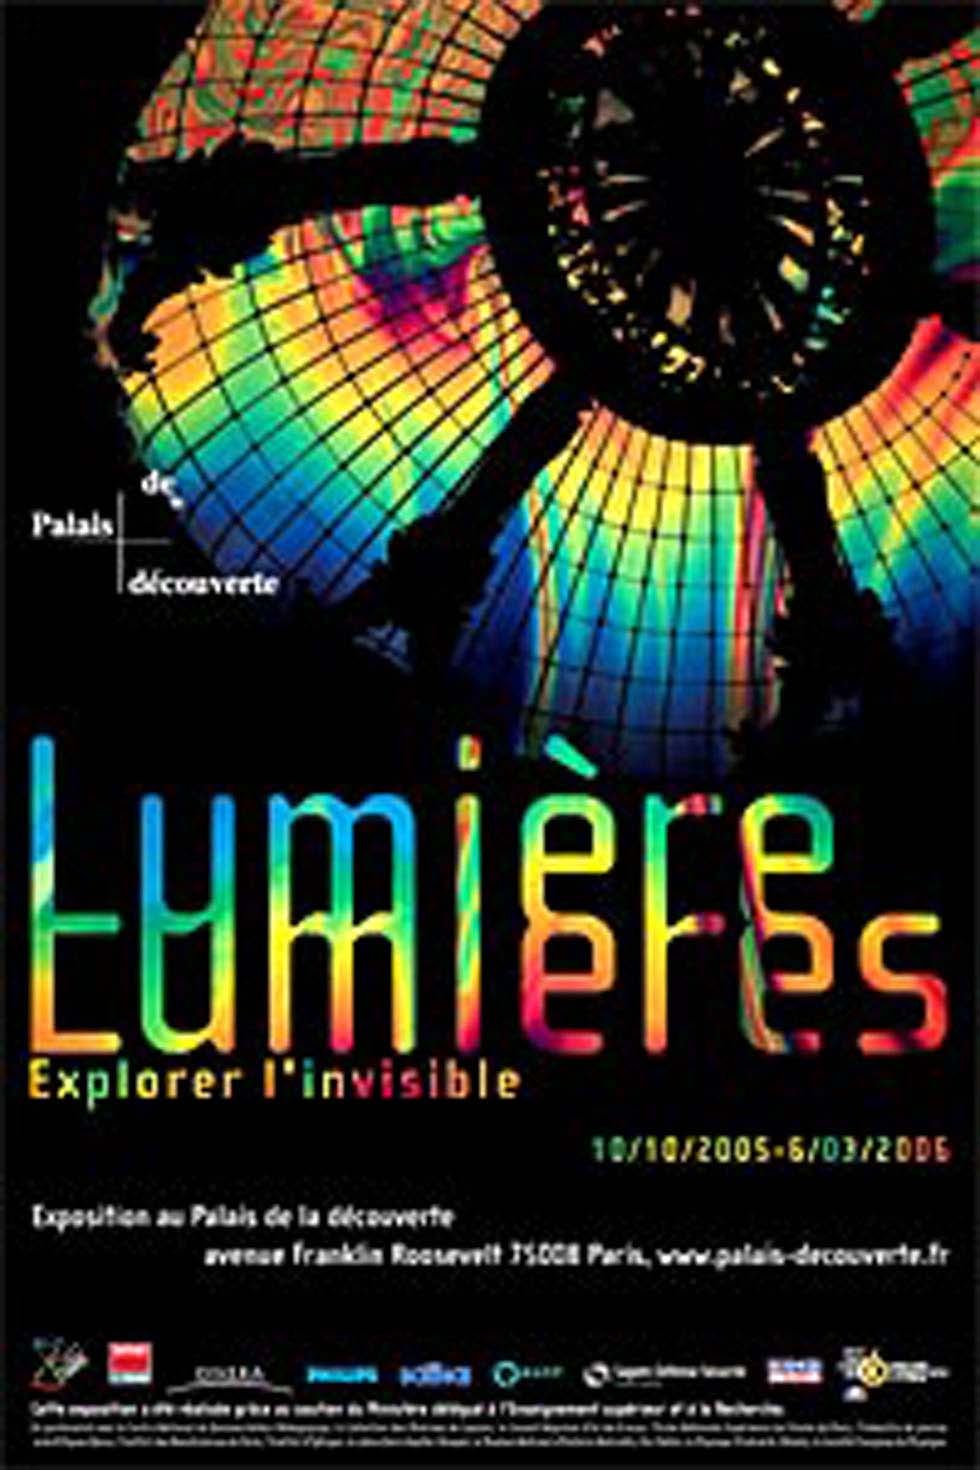 2005 : Lumière Lumières - Explorer l'invisible(ouverture du diaporama)